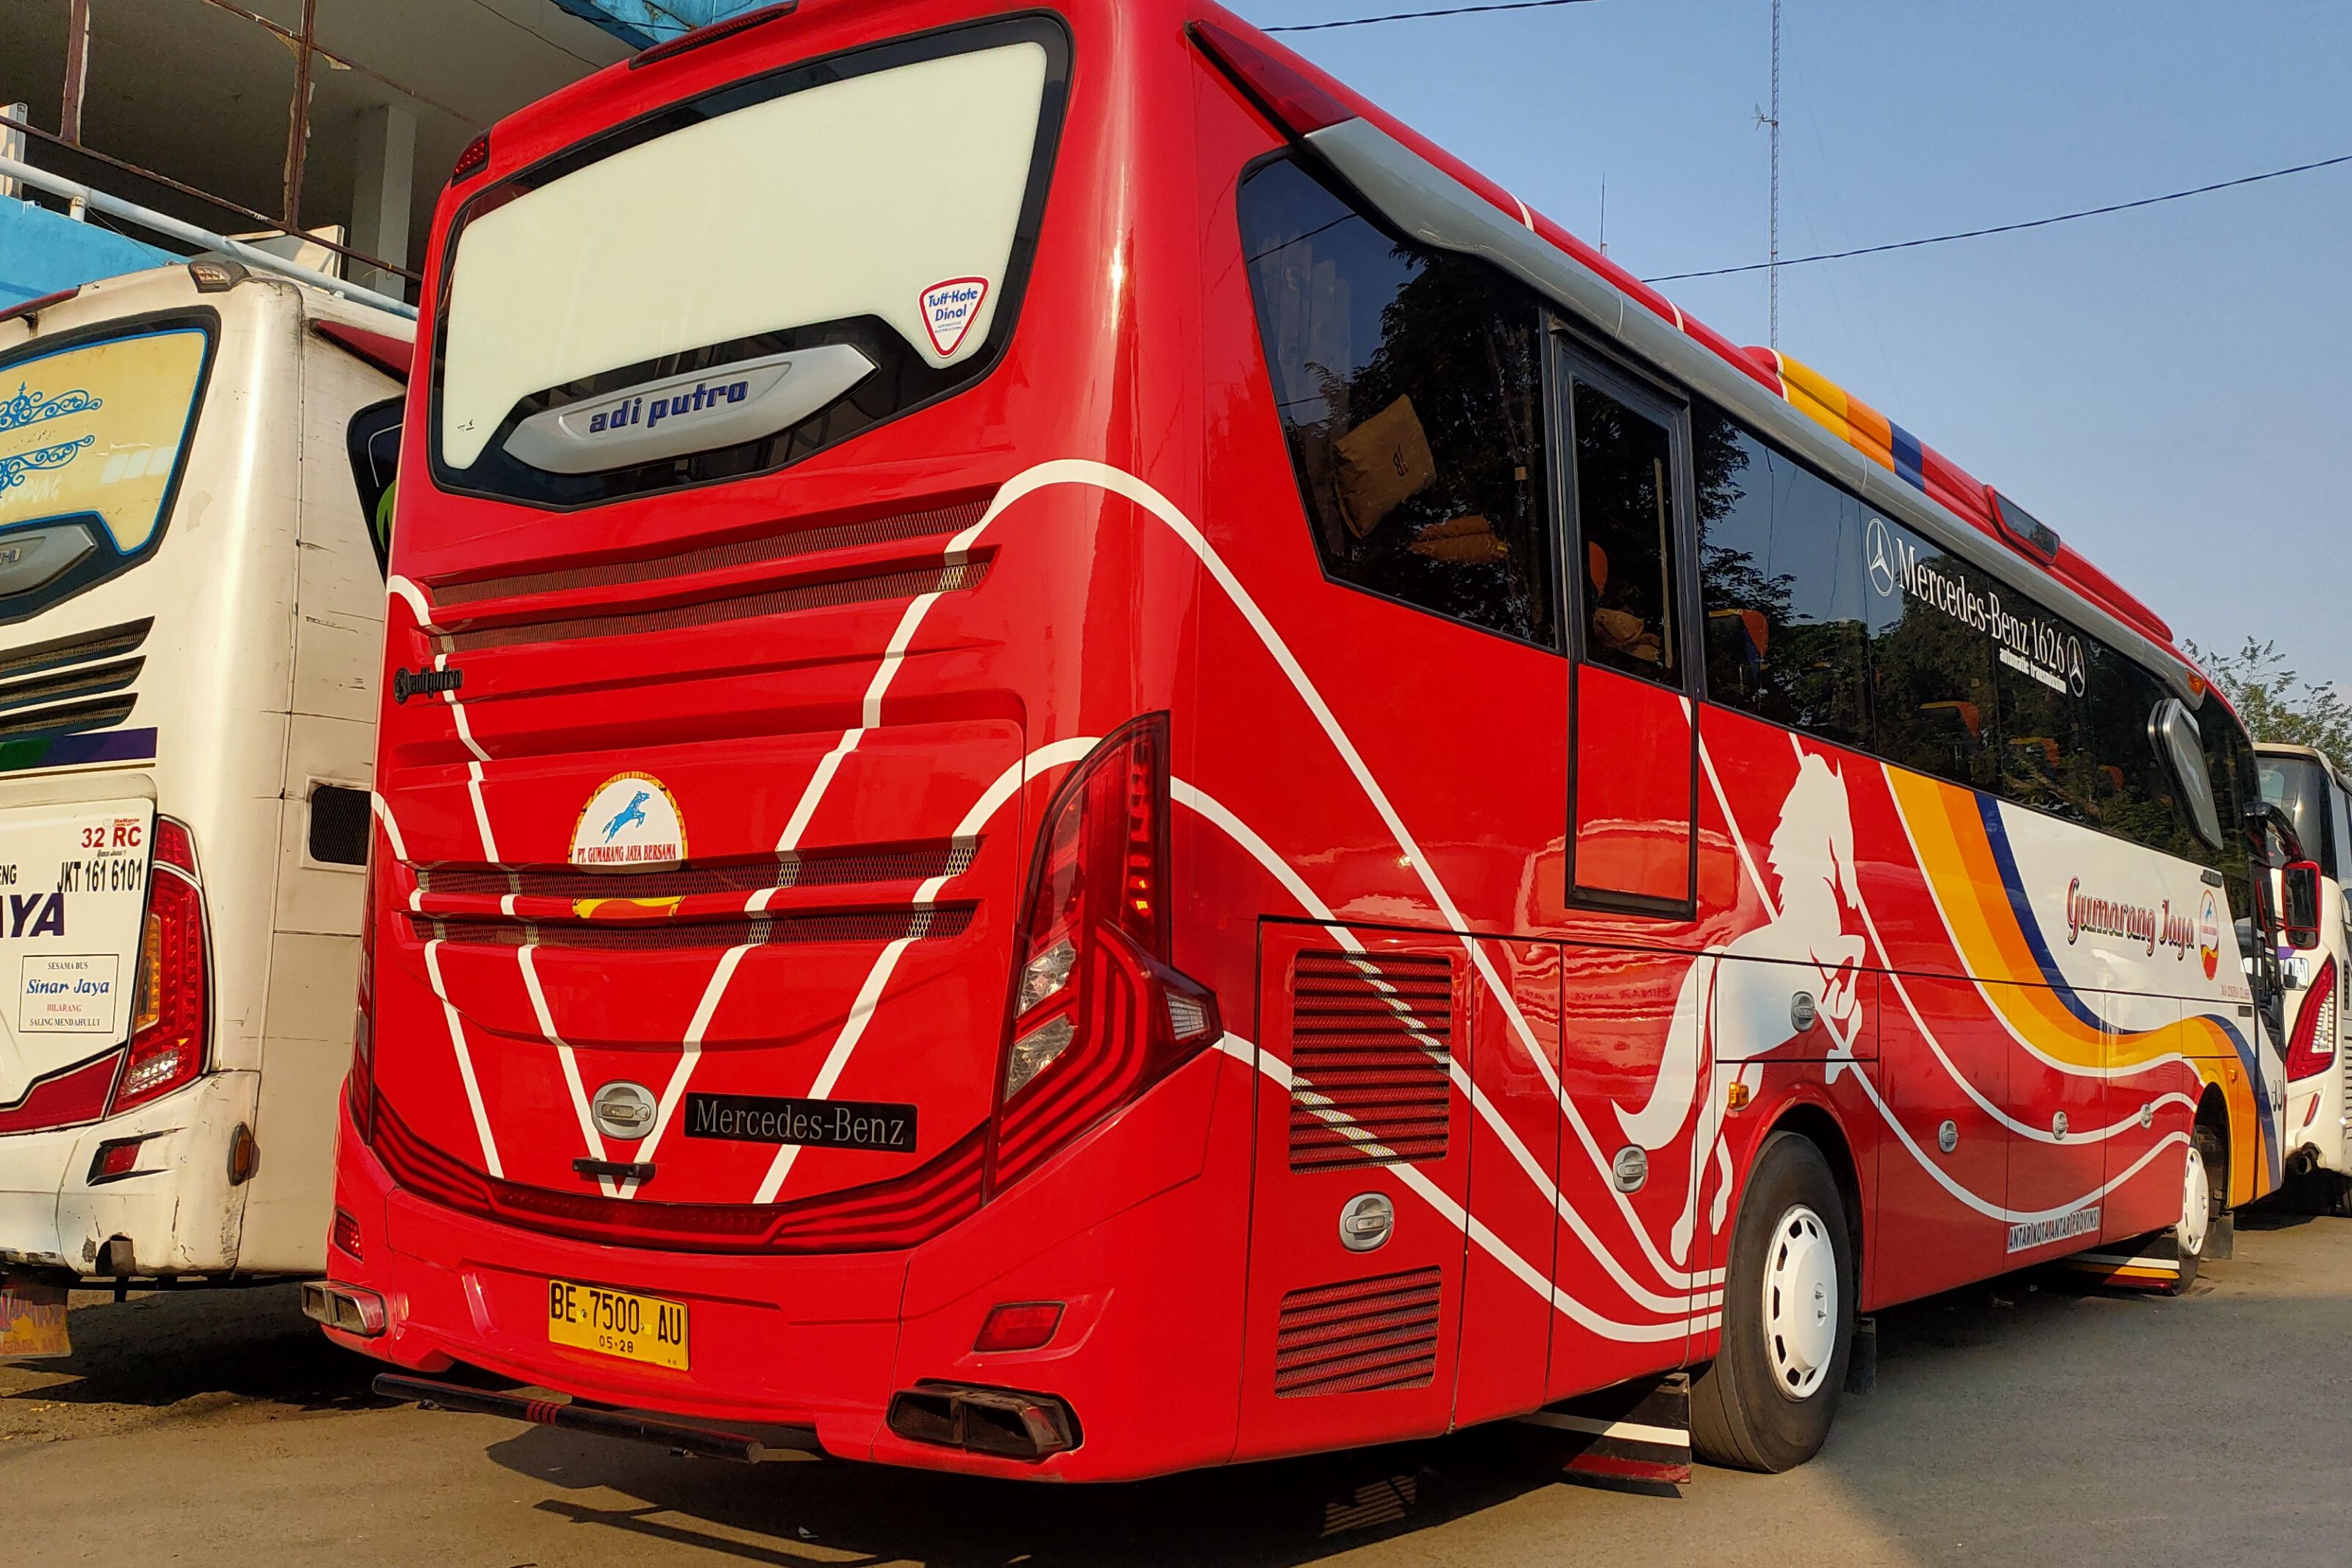 Sasis yang Cocok buat Bus Lintas Sumatera Menurut Sopir Bus